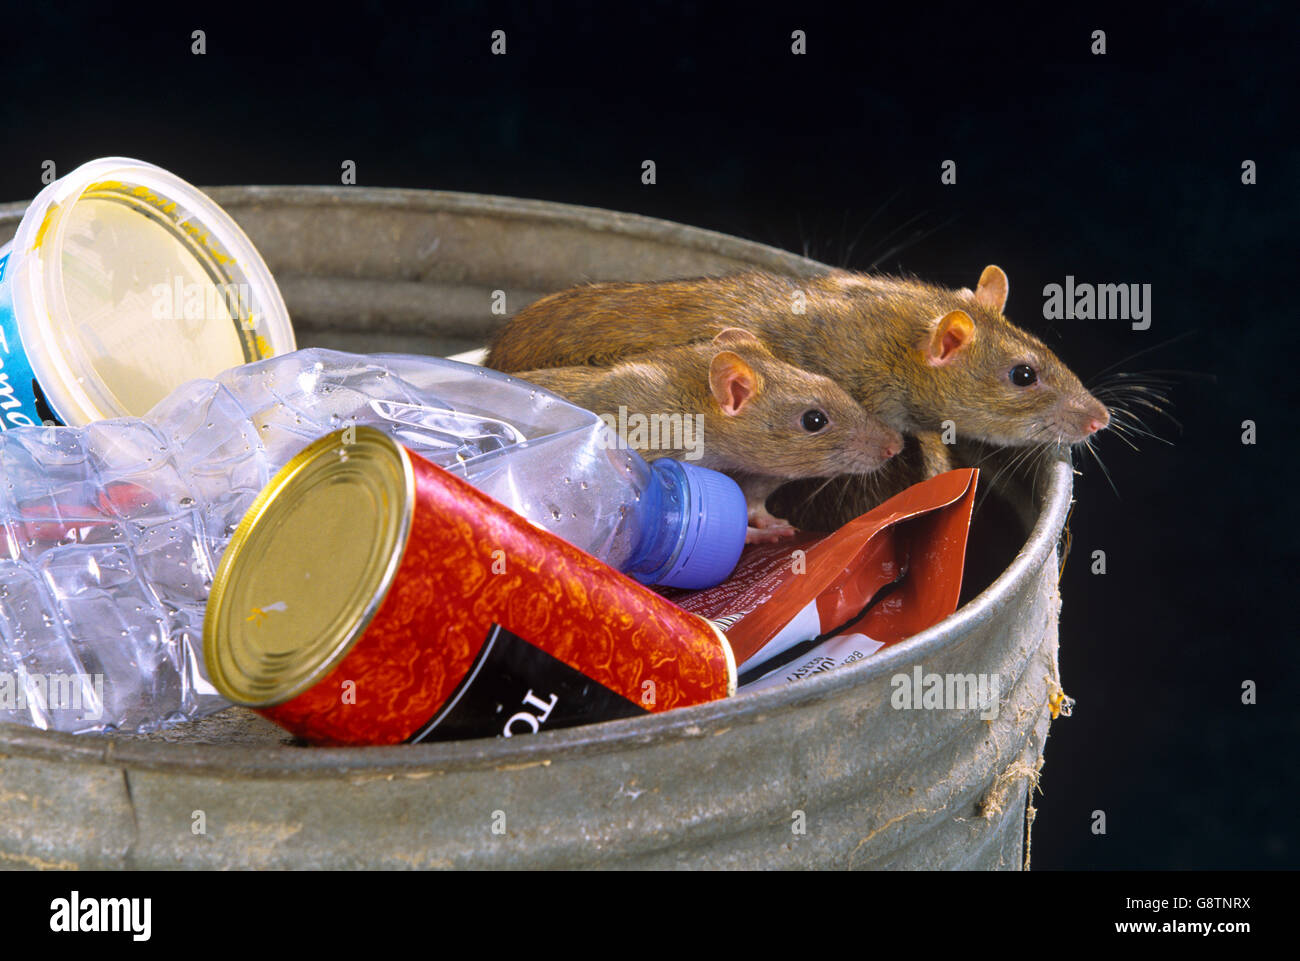 Brown ratti Rattus norvegicus approfittando di scartato cibo nei pressi di cibo take away uscita in ambiente urbano Foto Stock